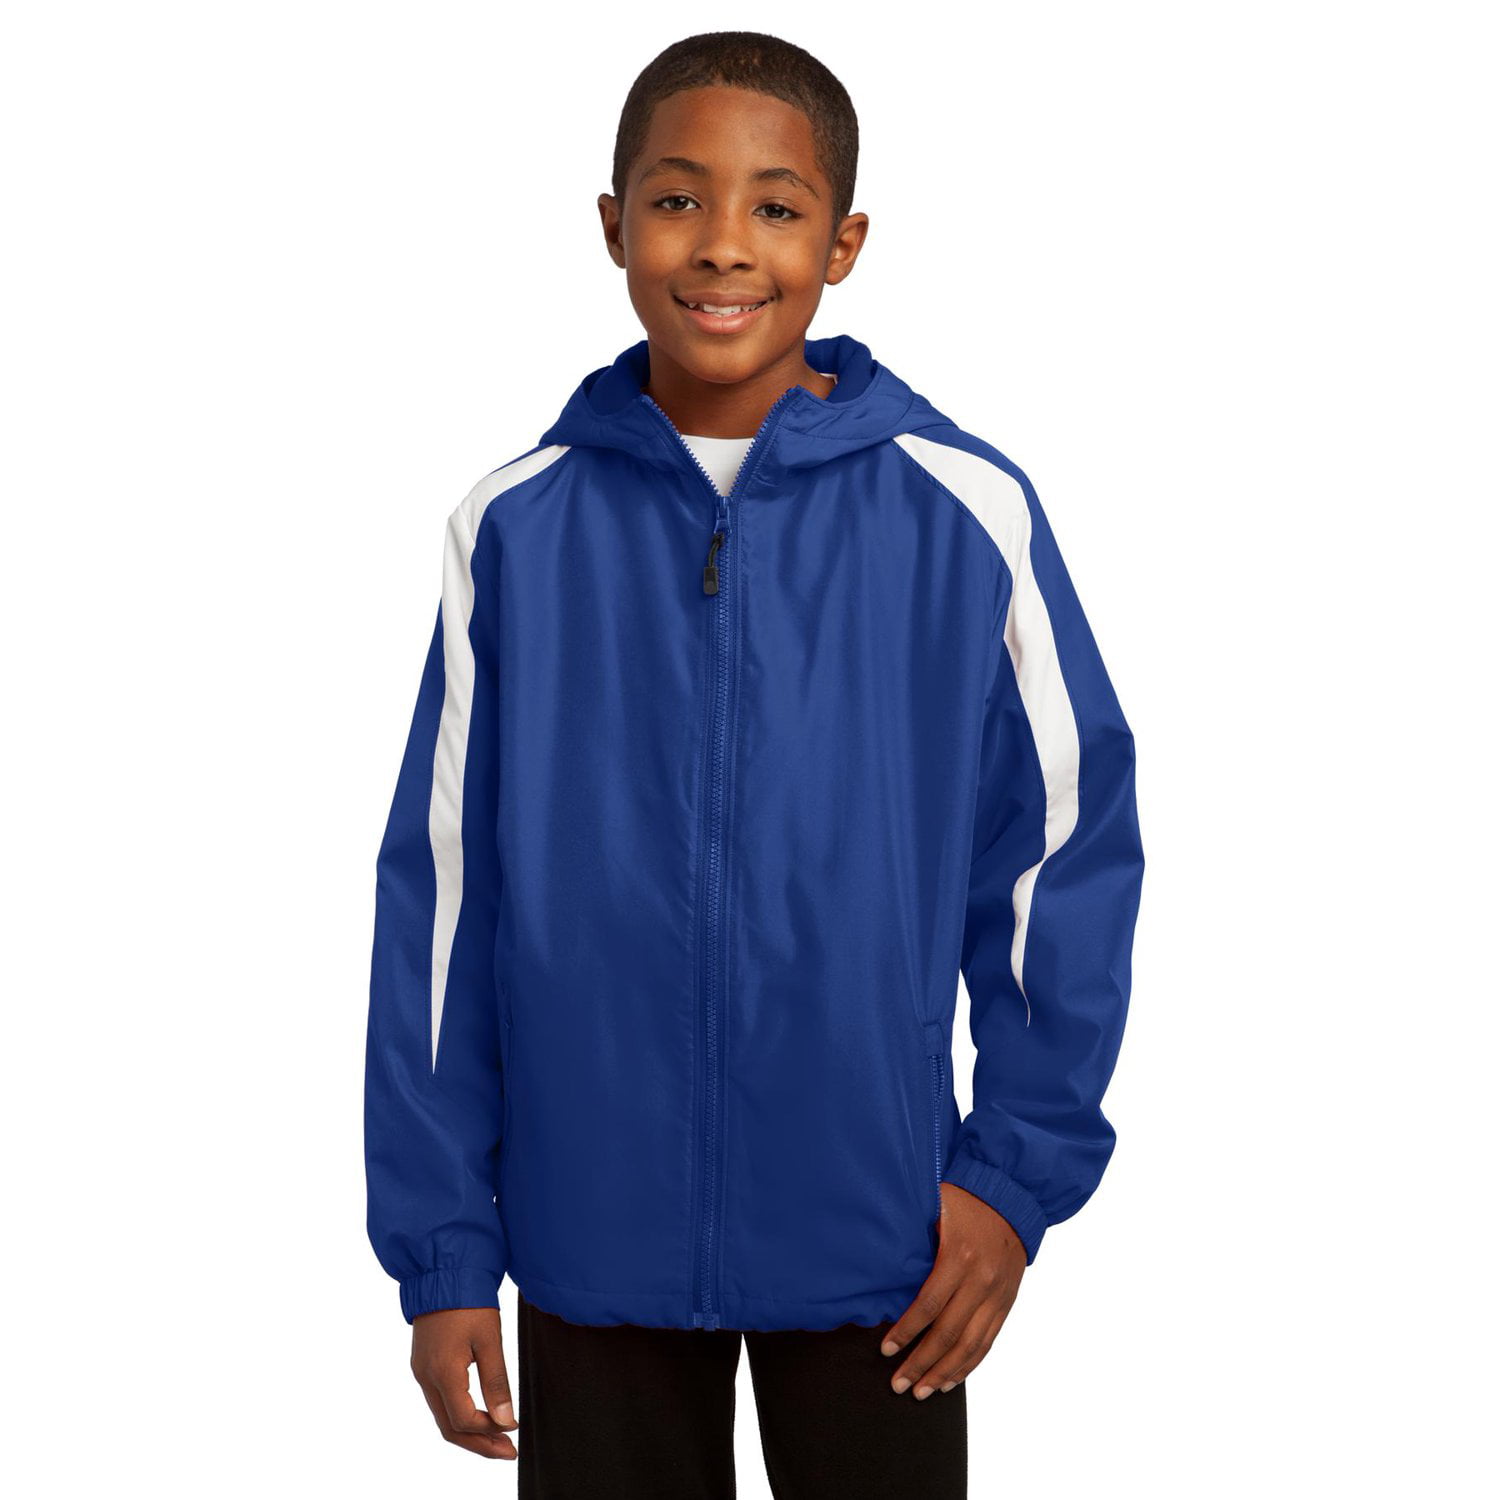 Sport-Tek Youth Fleece-Lined Colorblock Jacket. YST81 - Walmart.com